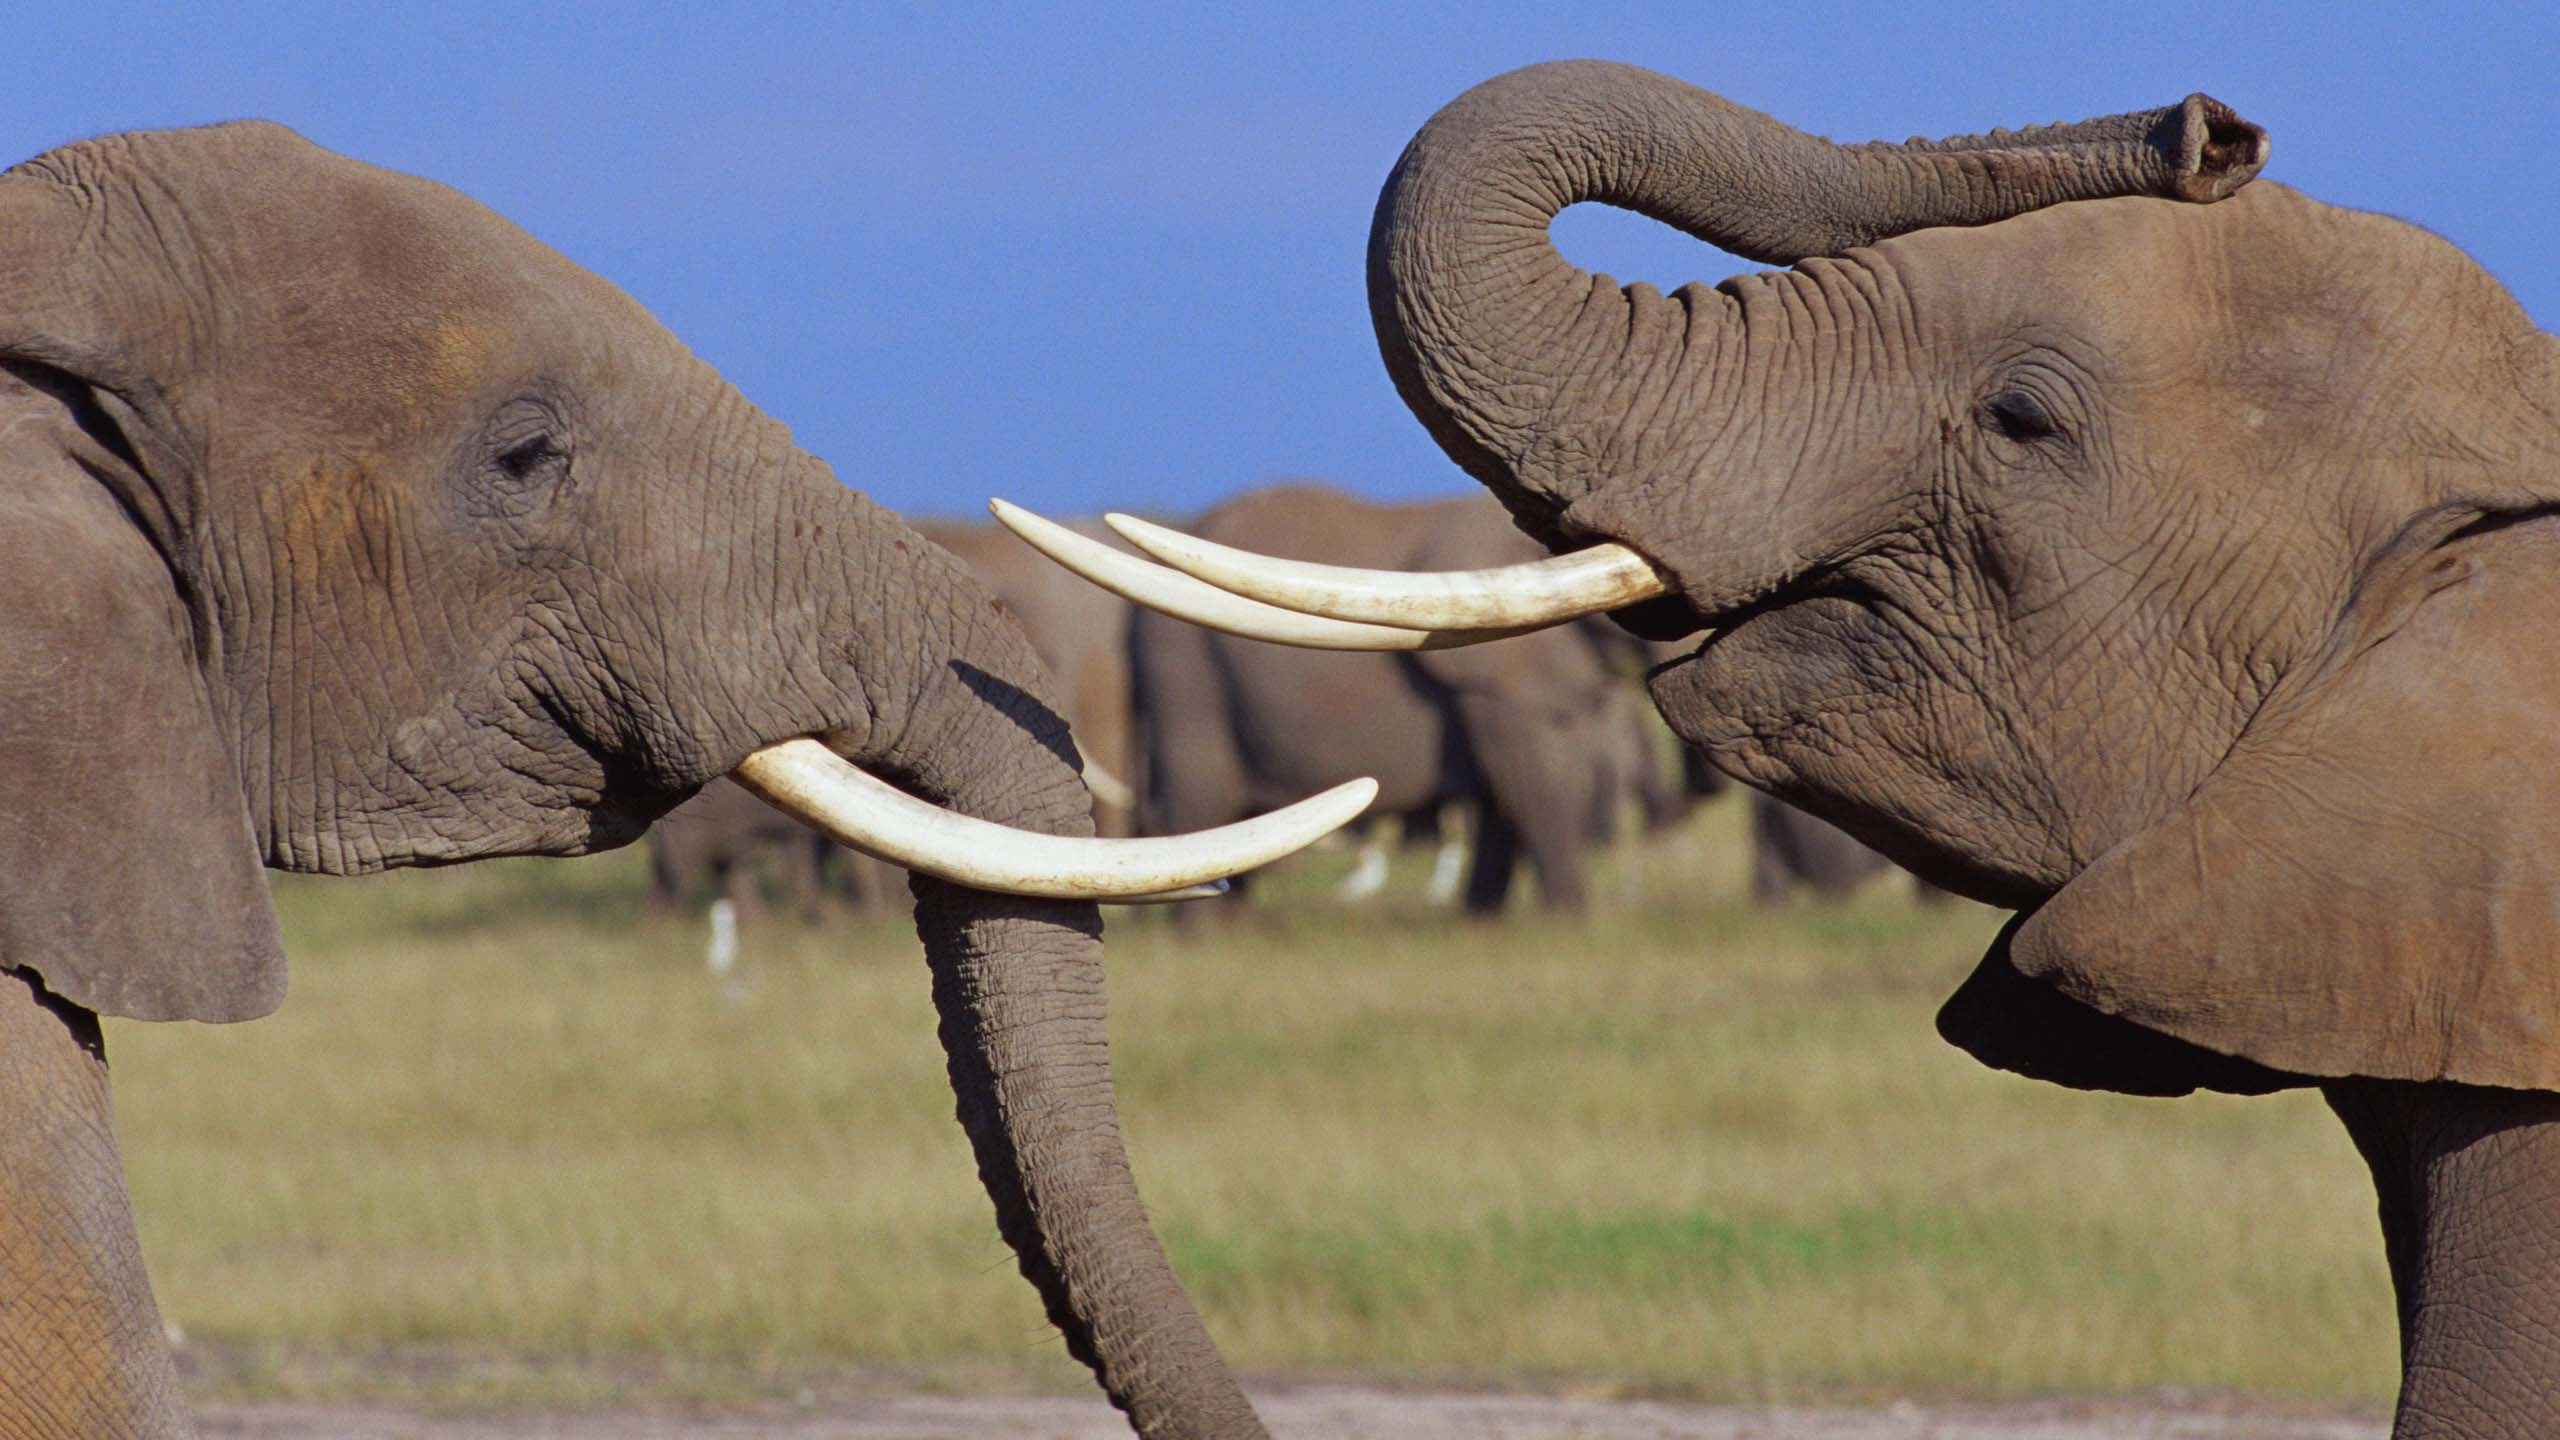 大象和猛犸象, 陆地动物, 印度大象, 野生动物, 非洲象 壁纸 2560x1440 允许